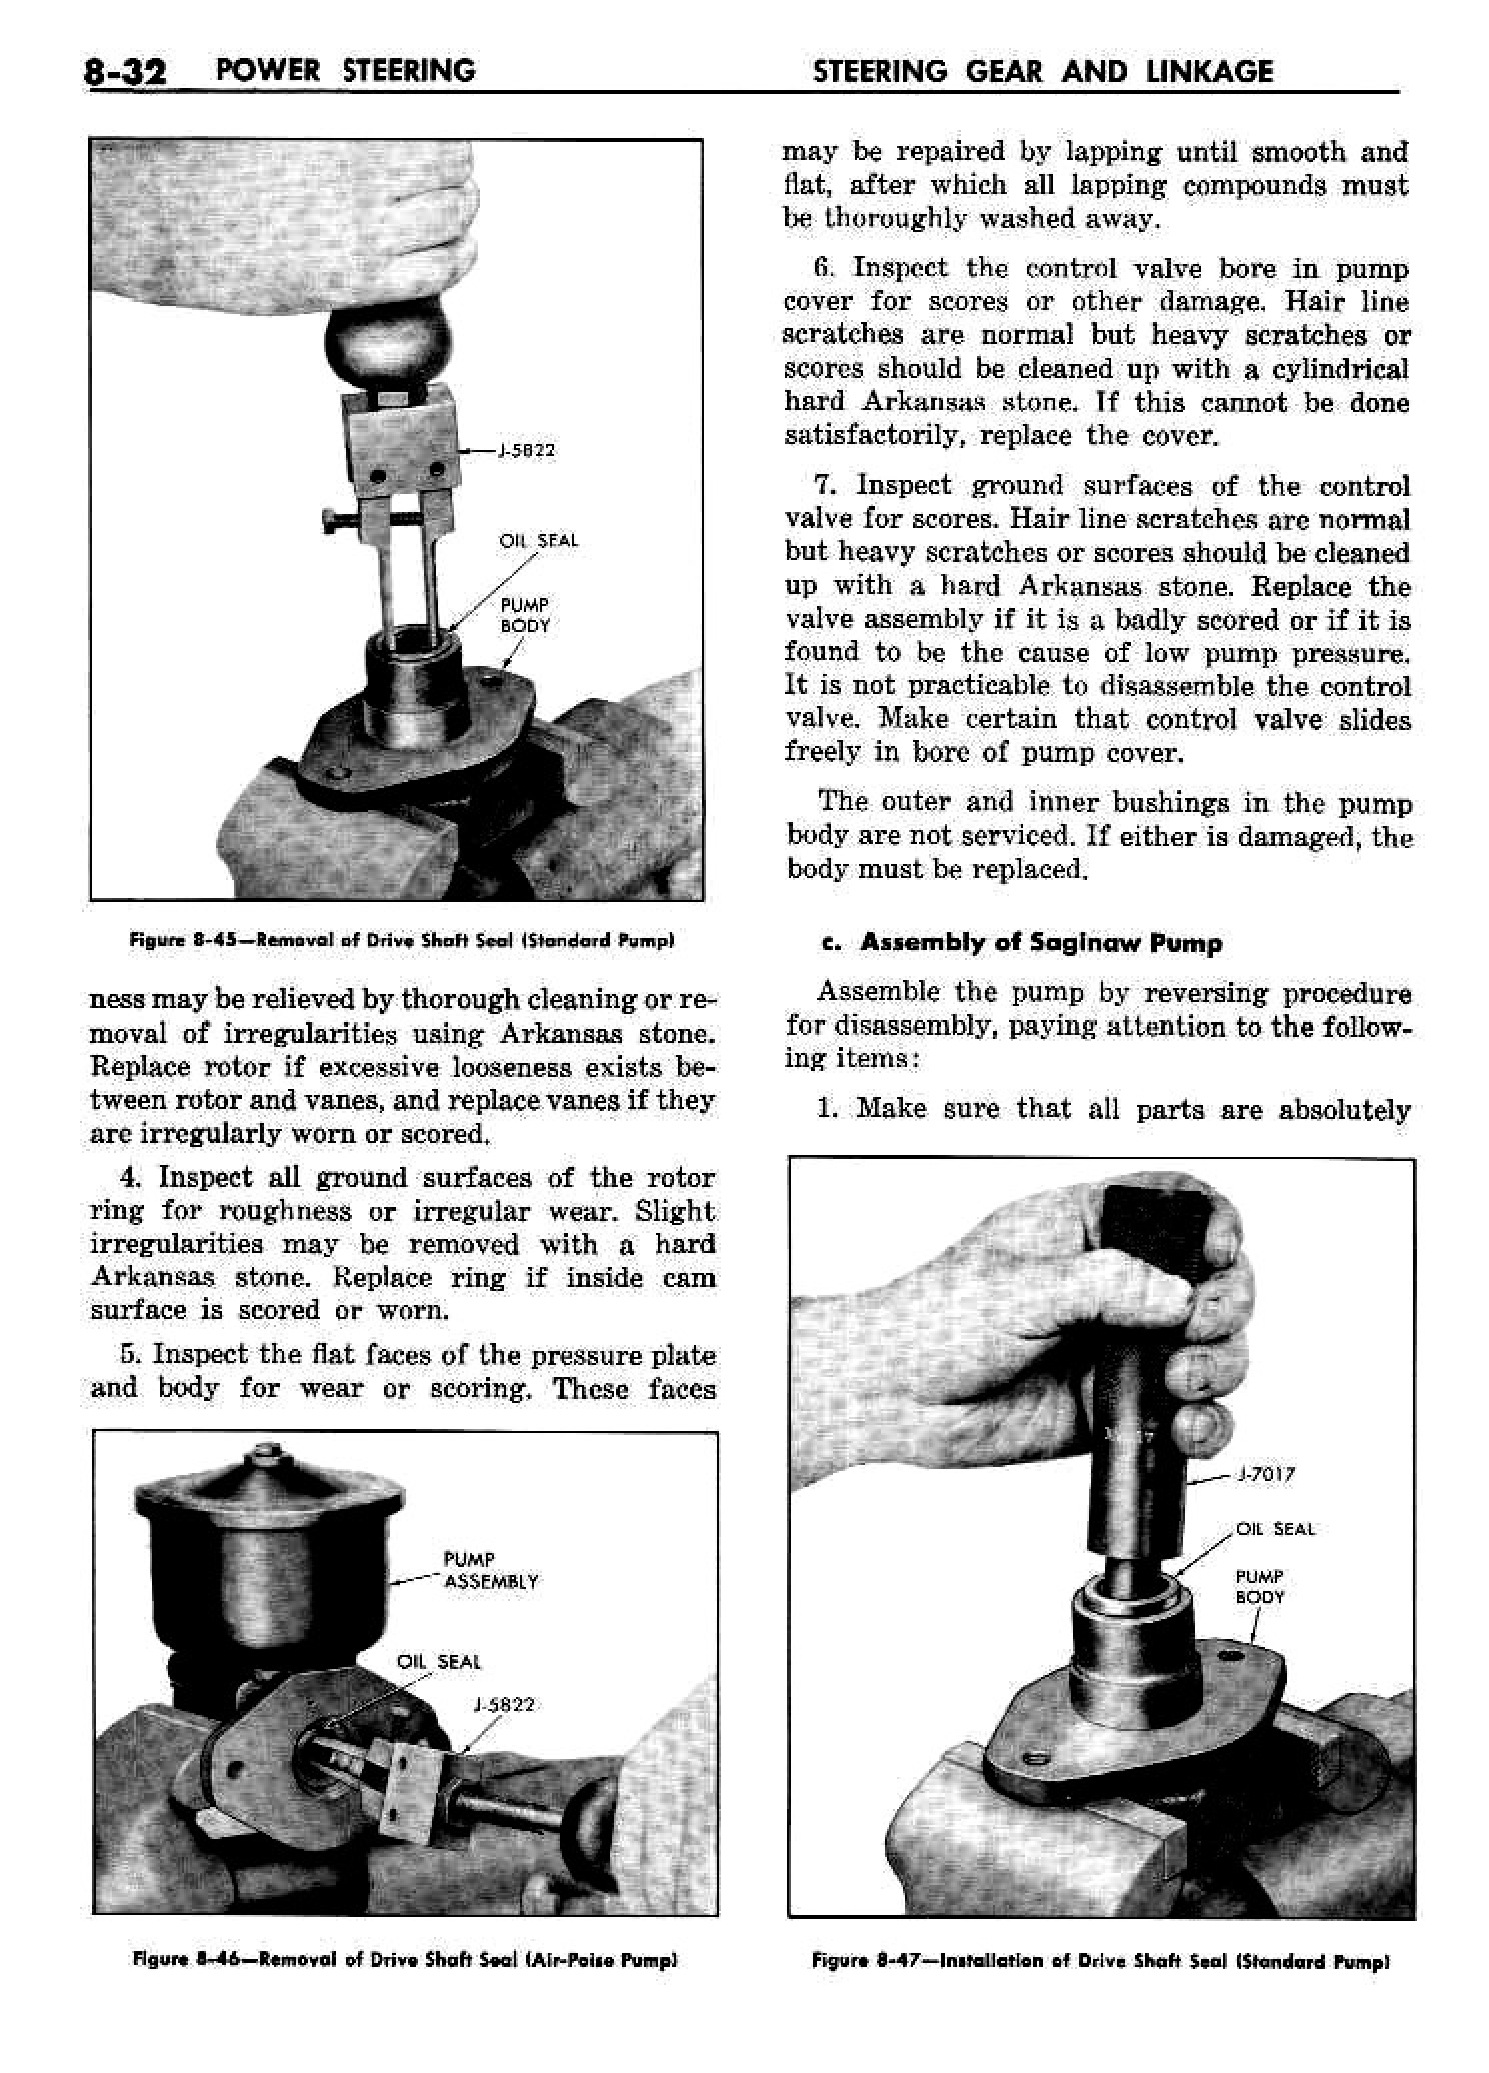 n_09 1958 Buick Shop Manual - Steering_32.jpg